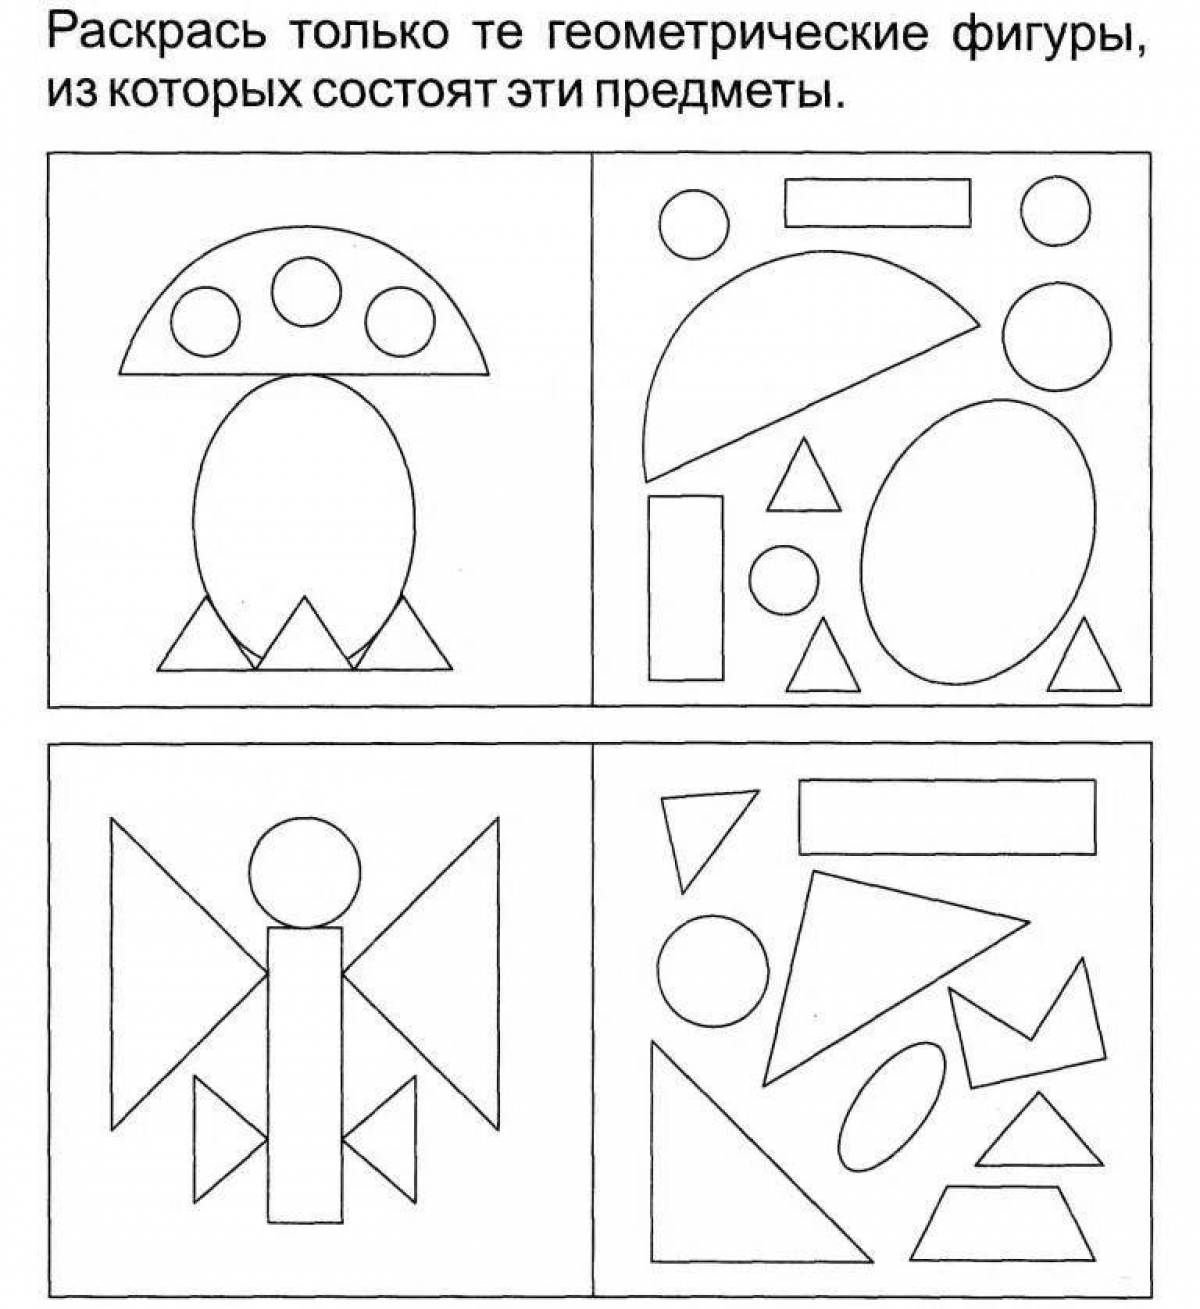 Задания для дошкольников развивающие геометрические фигуры